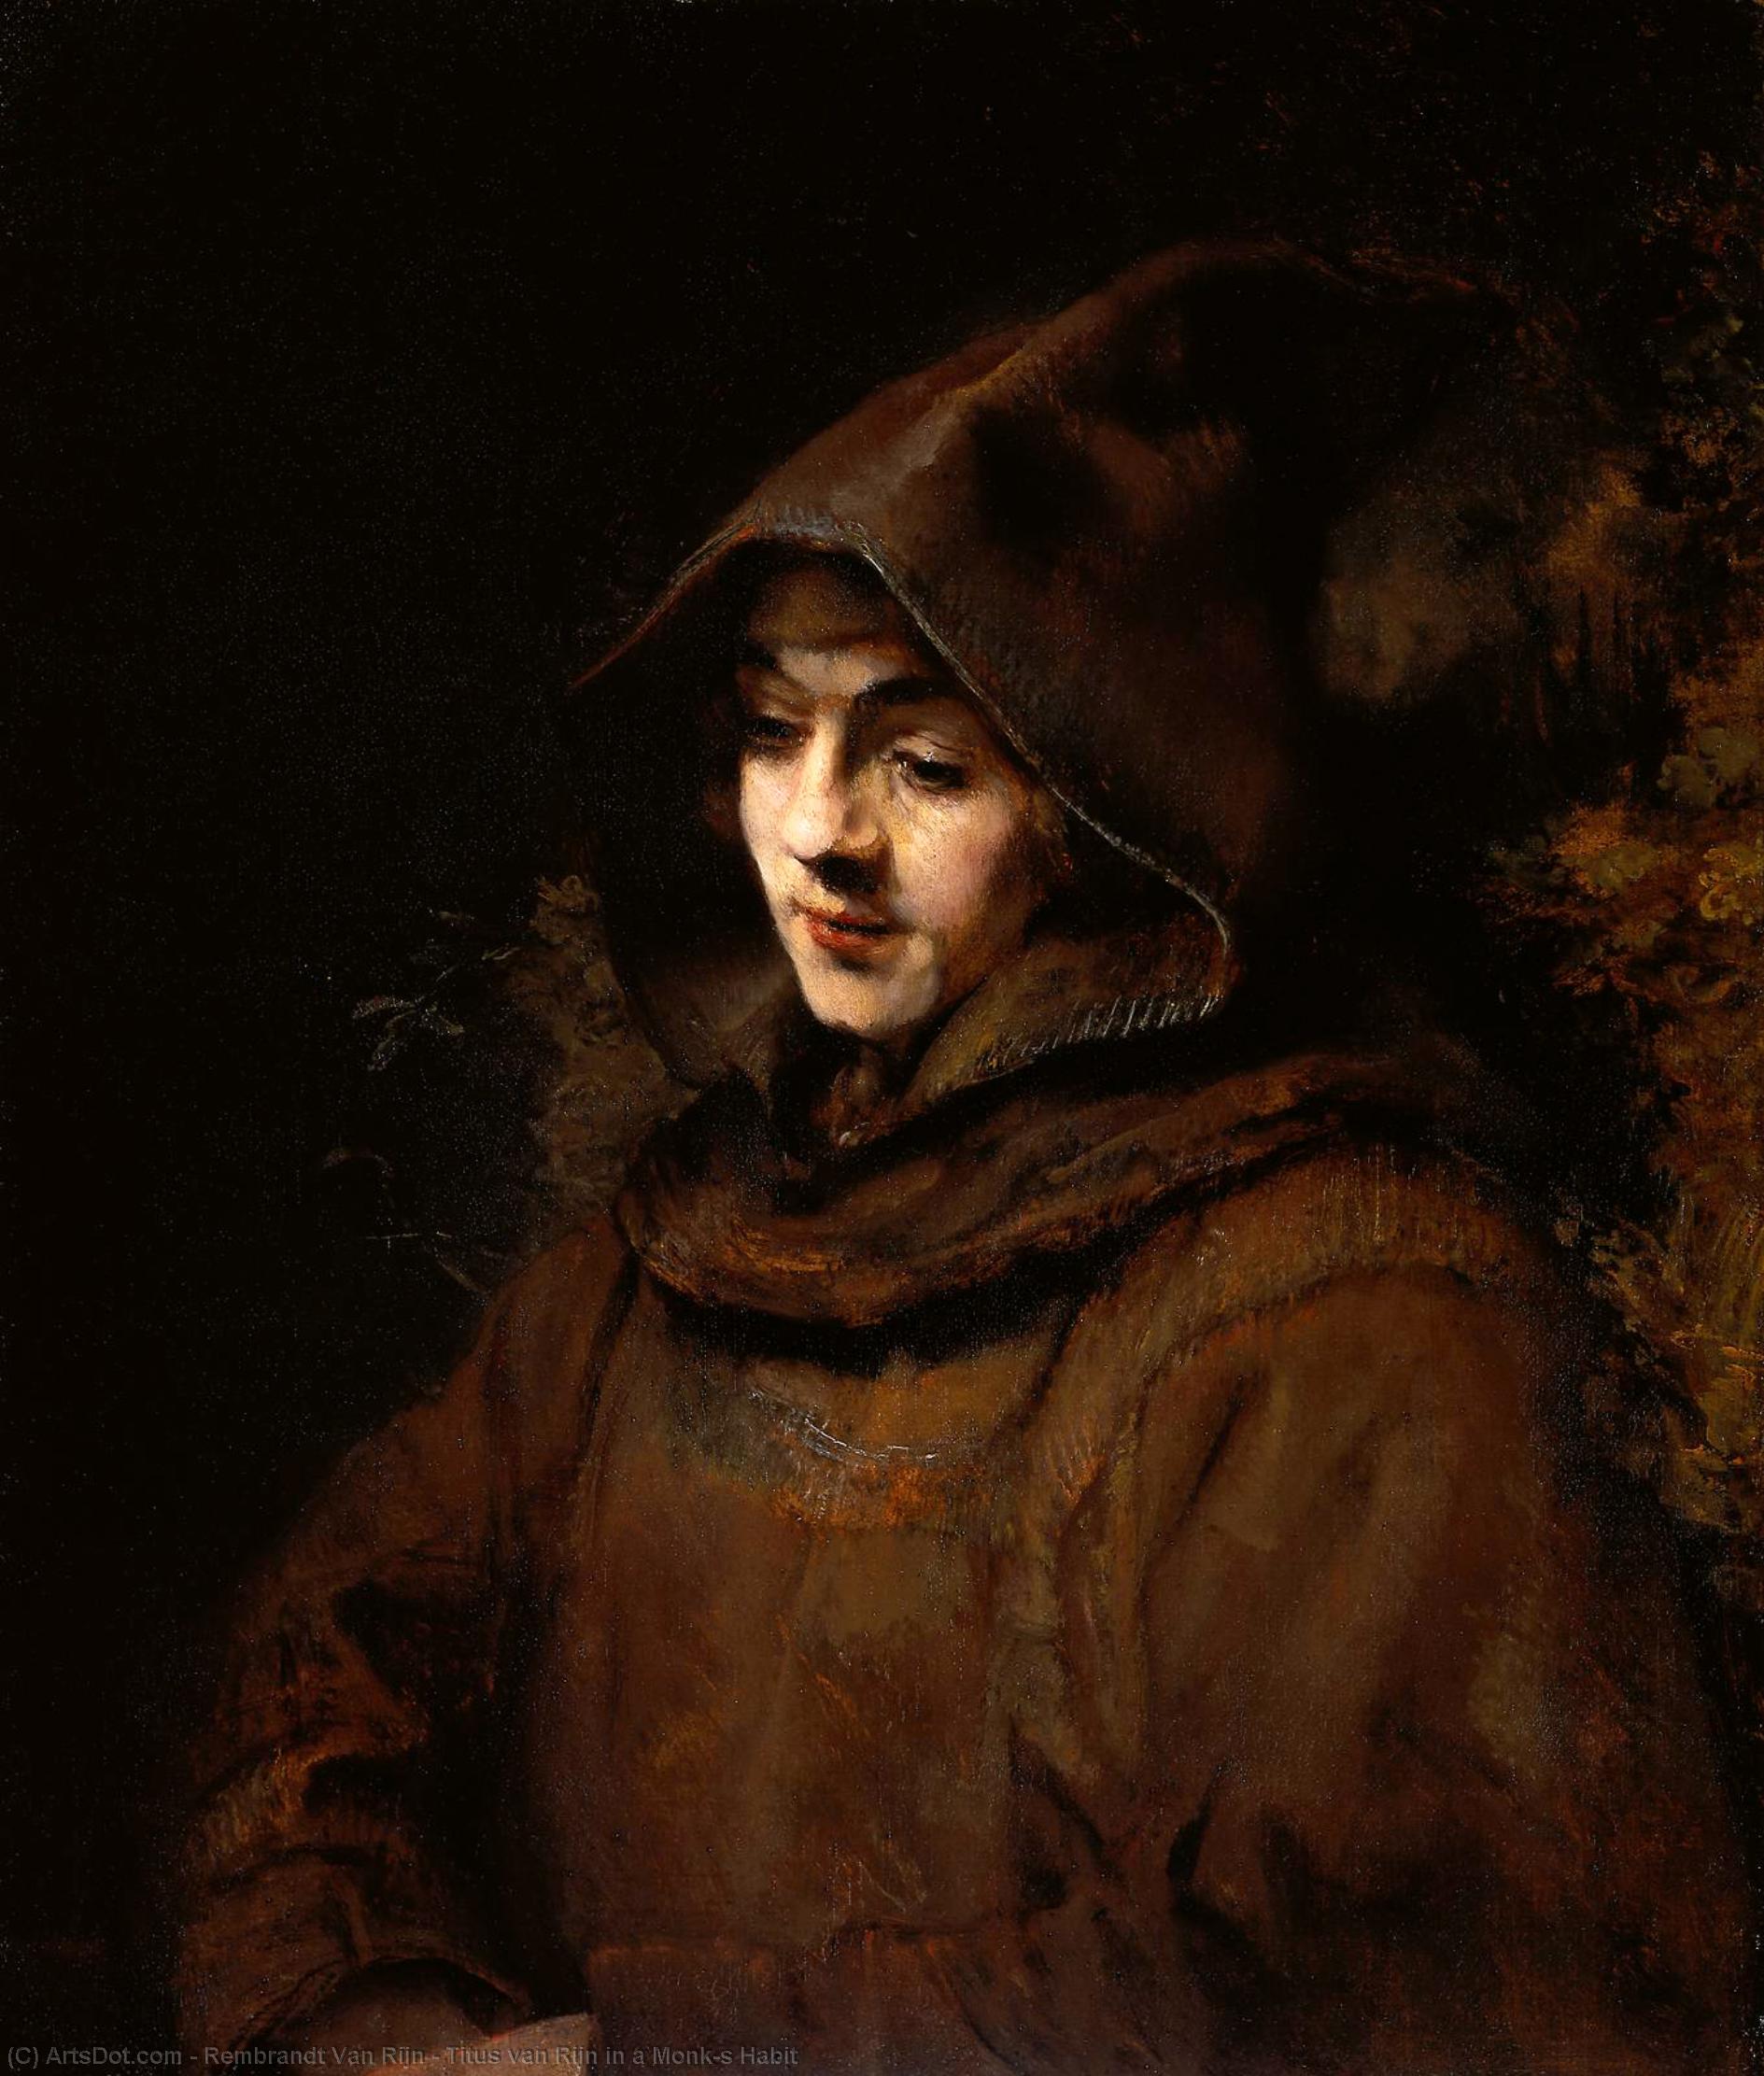 WikiOO.org - Εγκυκλοπαίδεια Καλών Τεχνών - Ζωγραφική, έργα τέχνης Rembrandt Van Rijn - Titus van Rijn in a Monk's Habit